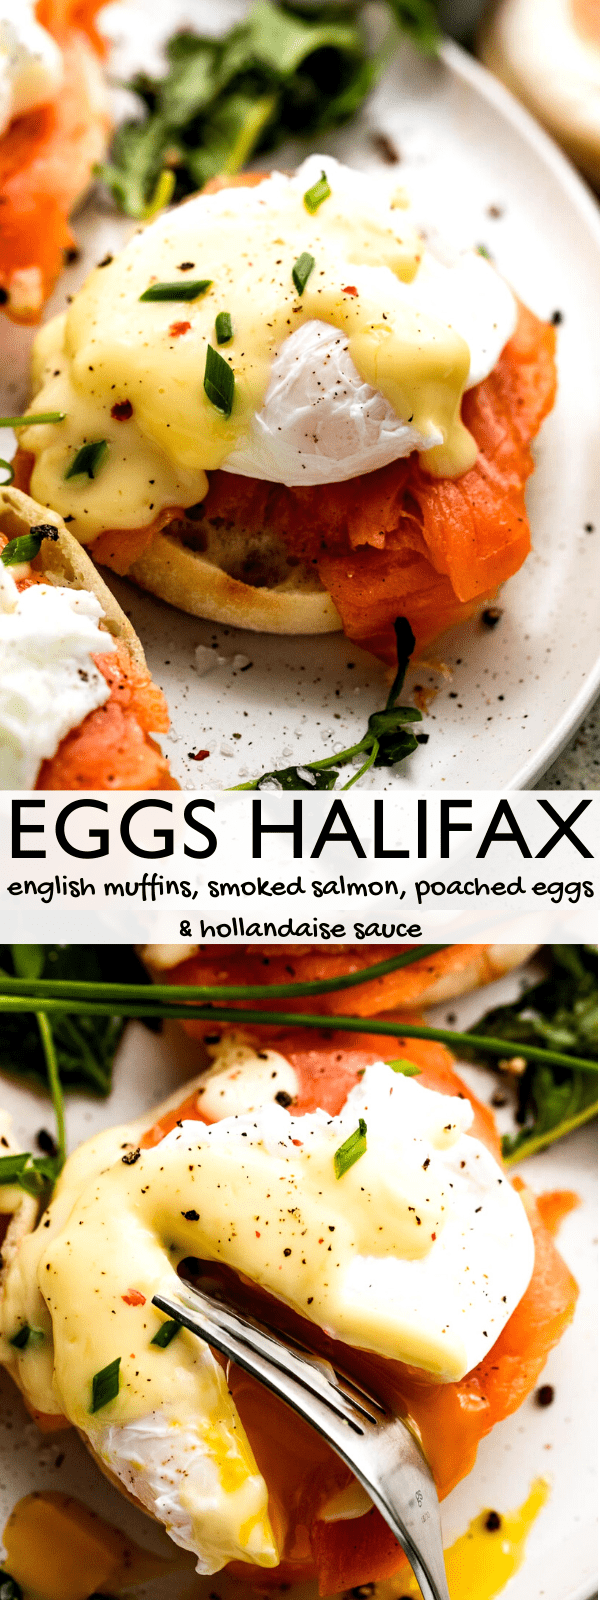 Halifax Eggs Recipe